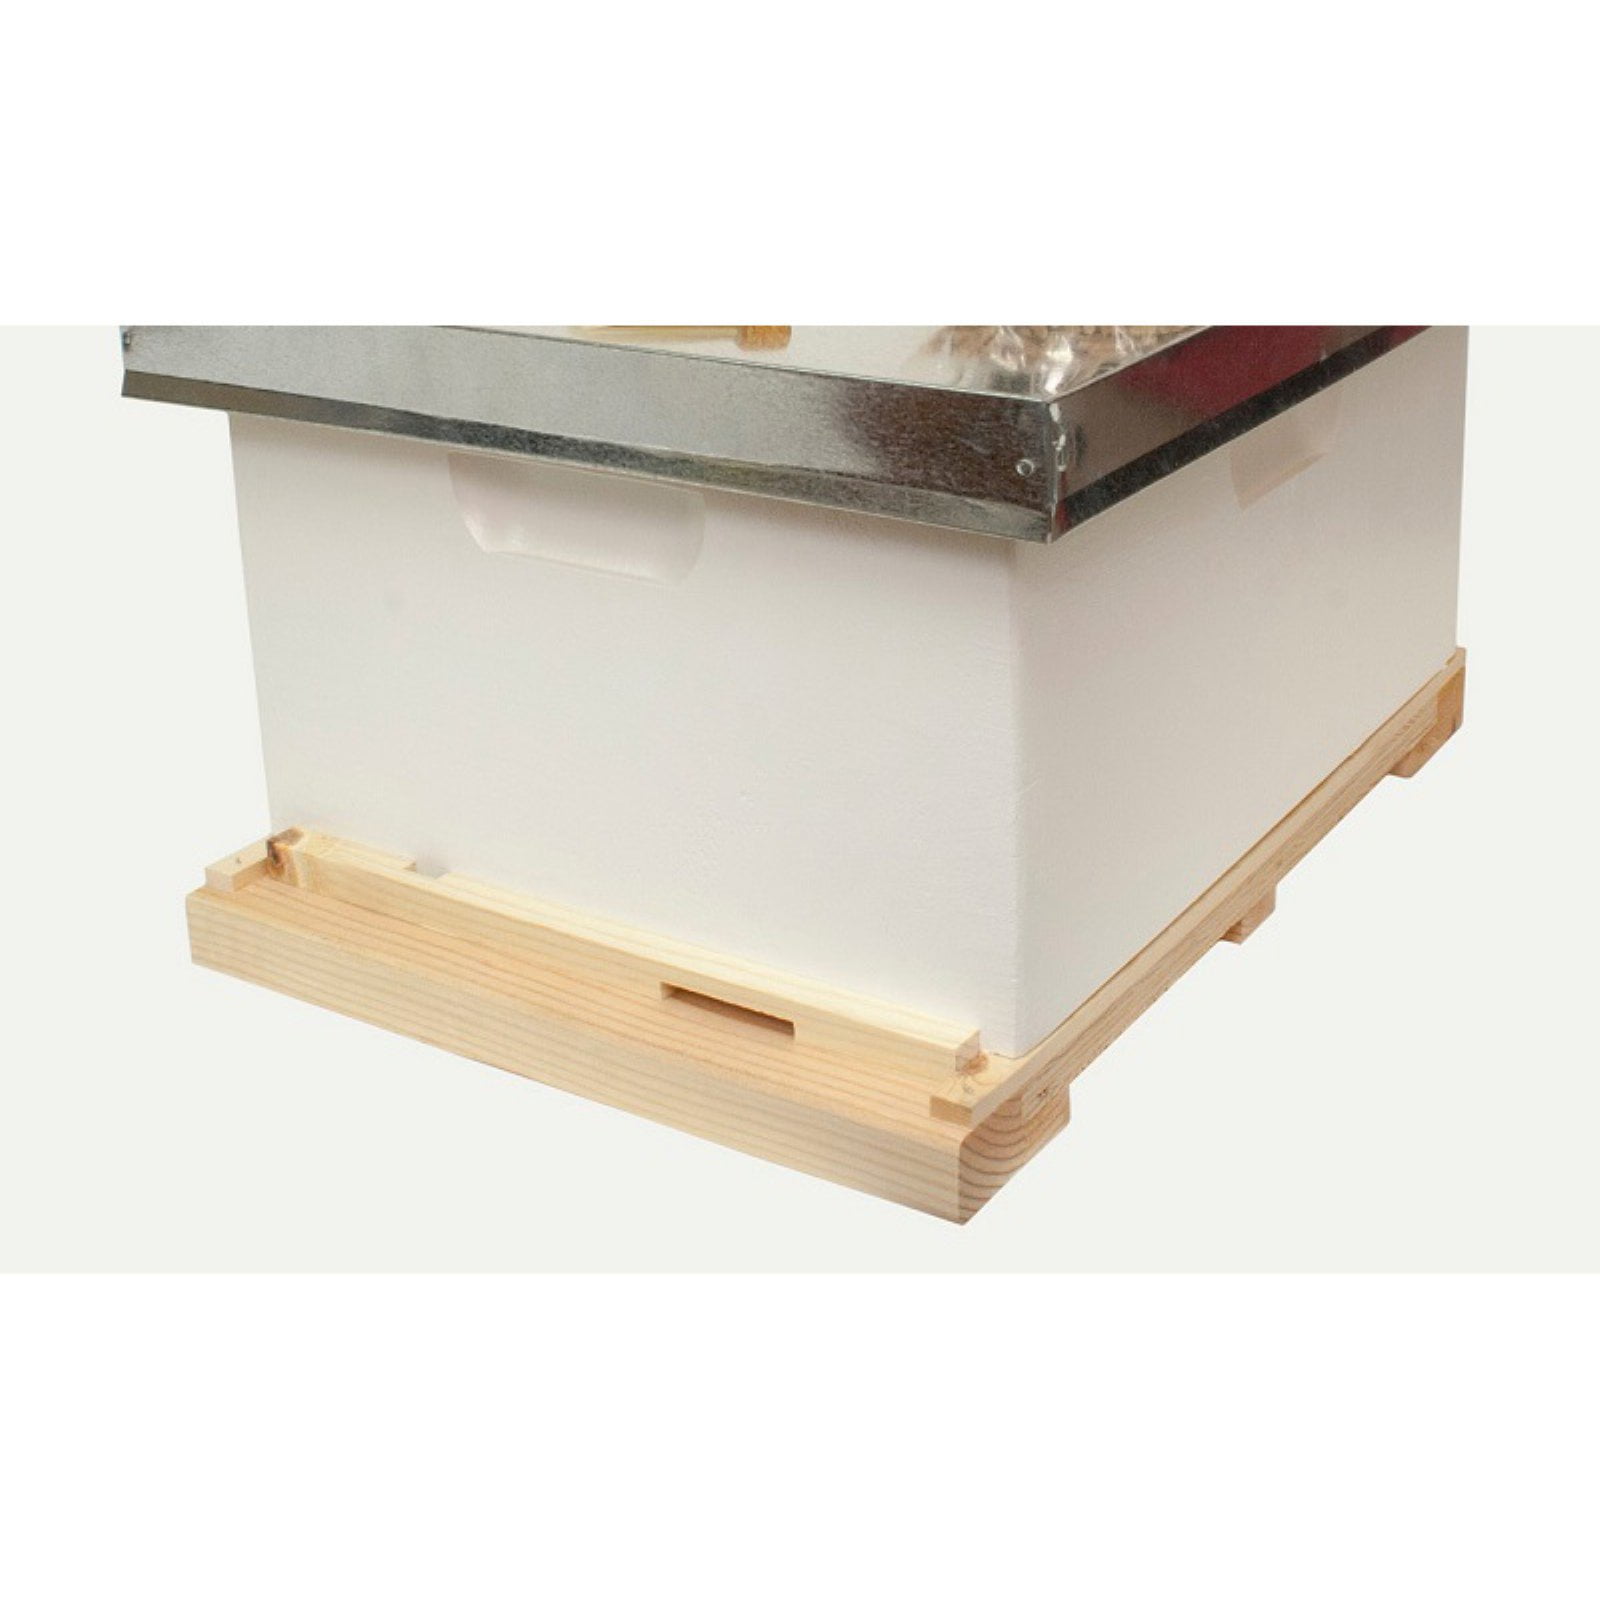 Harvest Lane Honey Wwa-104 Beginner Beekeeper Kit for sale online 